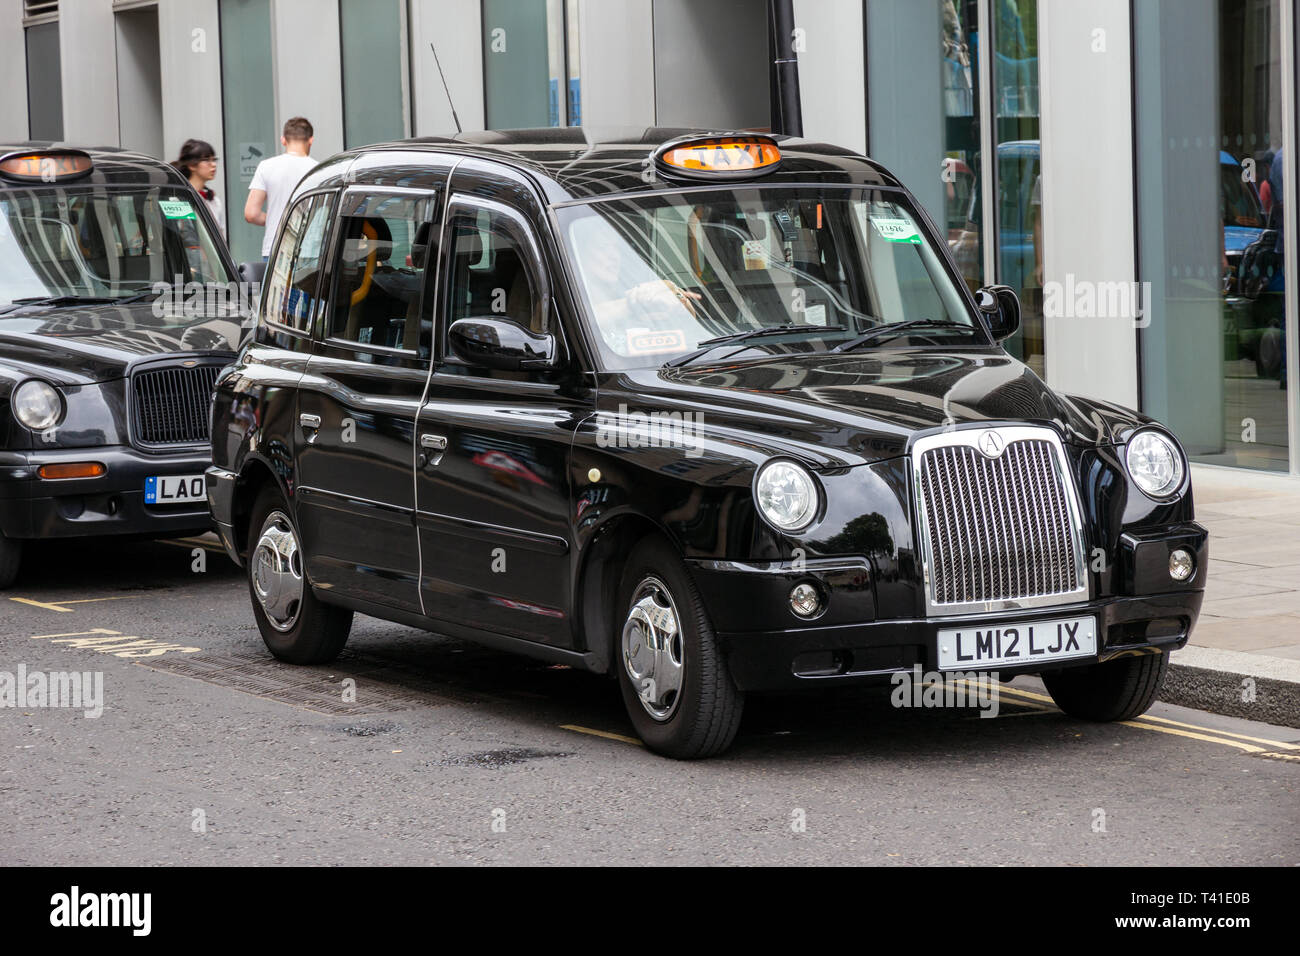 LONDON - Apr 2, 2015: Zeile von London Taxis aufgereiht auf dem Gehweg. Die berühmten schwarzen Taxis sind ein Symbol für die Stadt und eine große Attraktion in der Themse Stockfoto